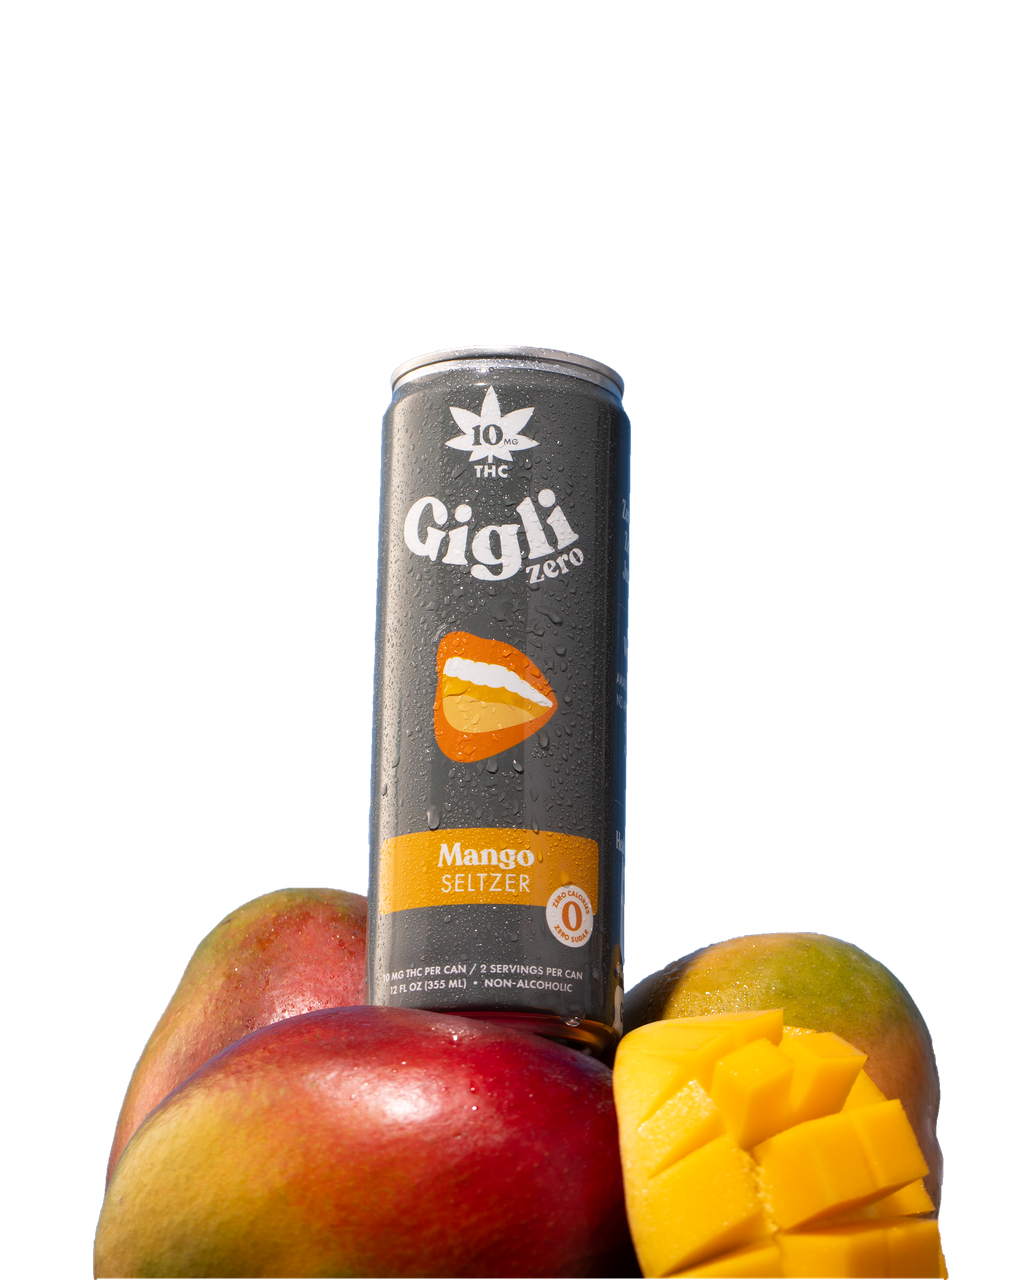 THC-Infused Mango Seltzer